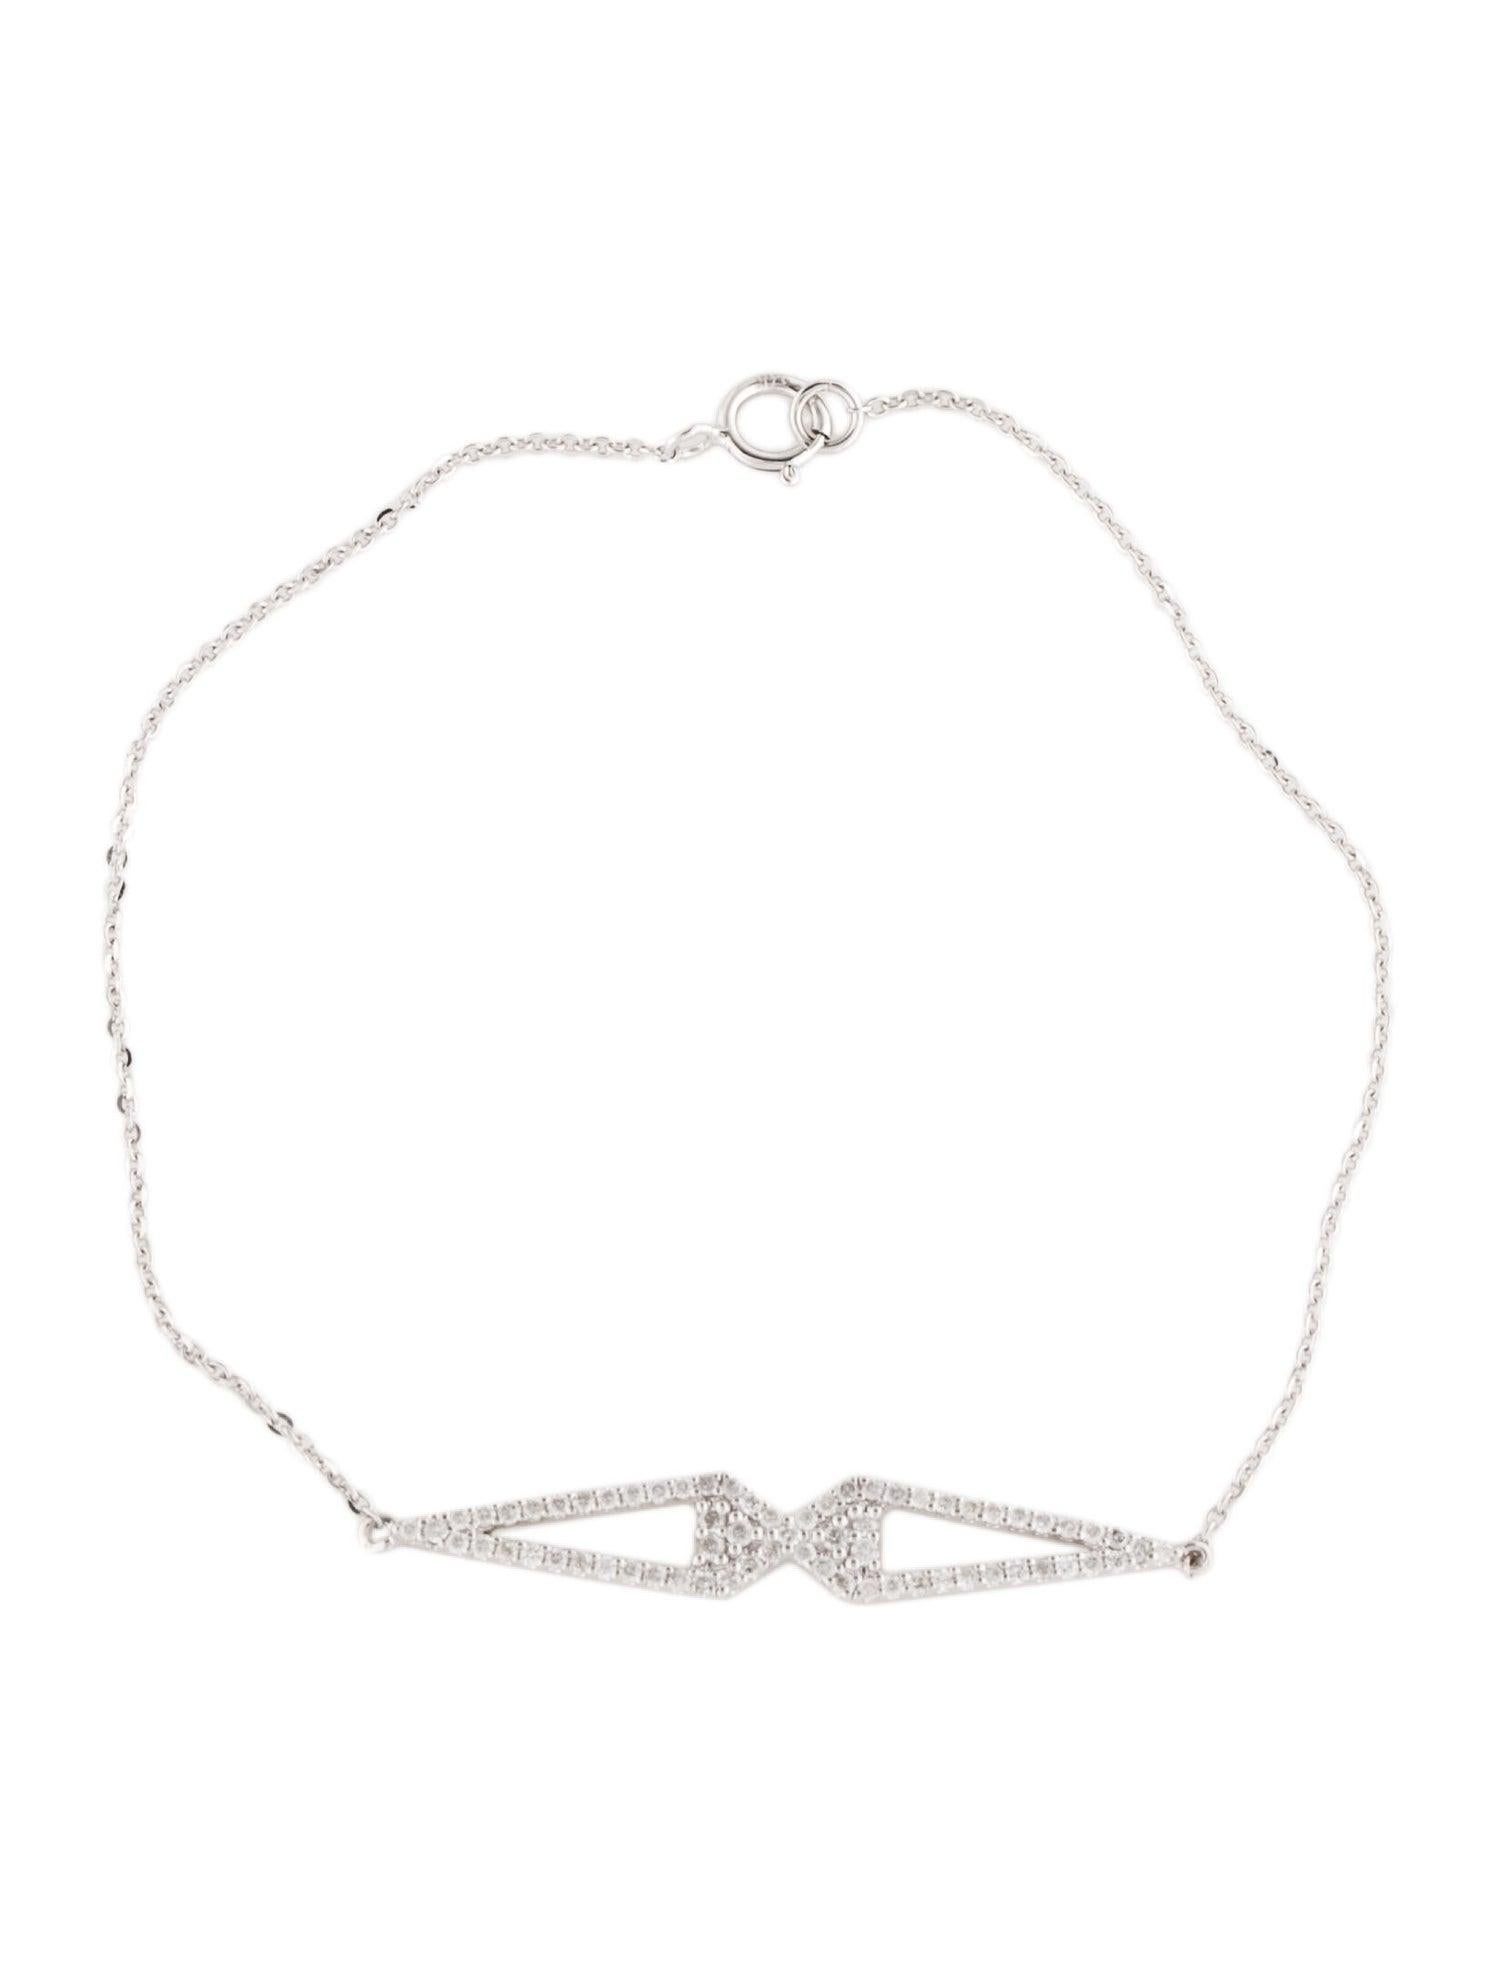 Découvrez la beauté éthérée de l'hiver avec notre bracelet en diamant Snowflake Soirée. Cette pièce exquise fait partie de notre collection exclusive qui capture la délicate complexité des flocons de neige dans des diamants blancs étincelants.